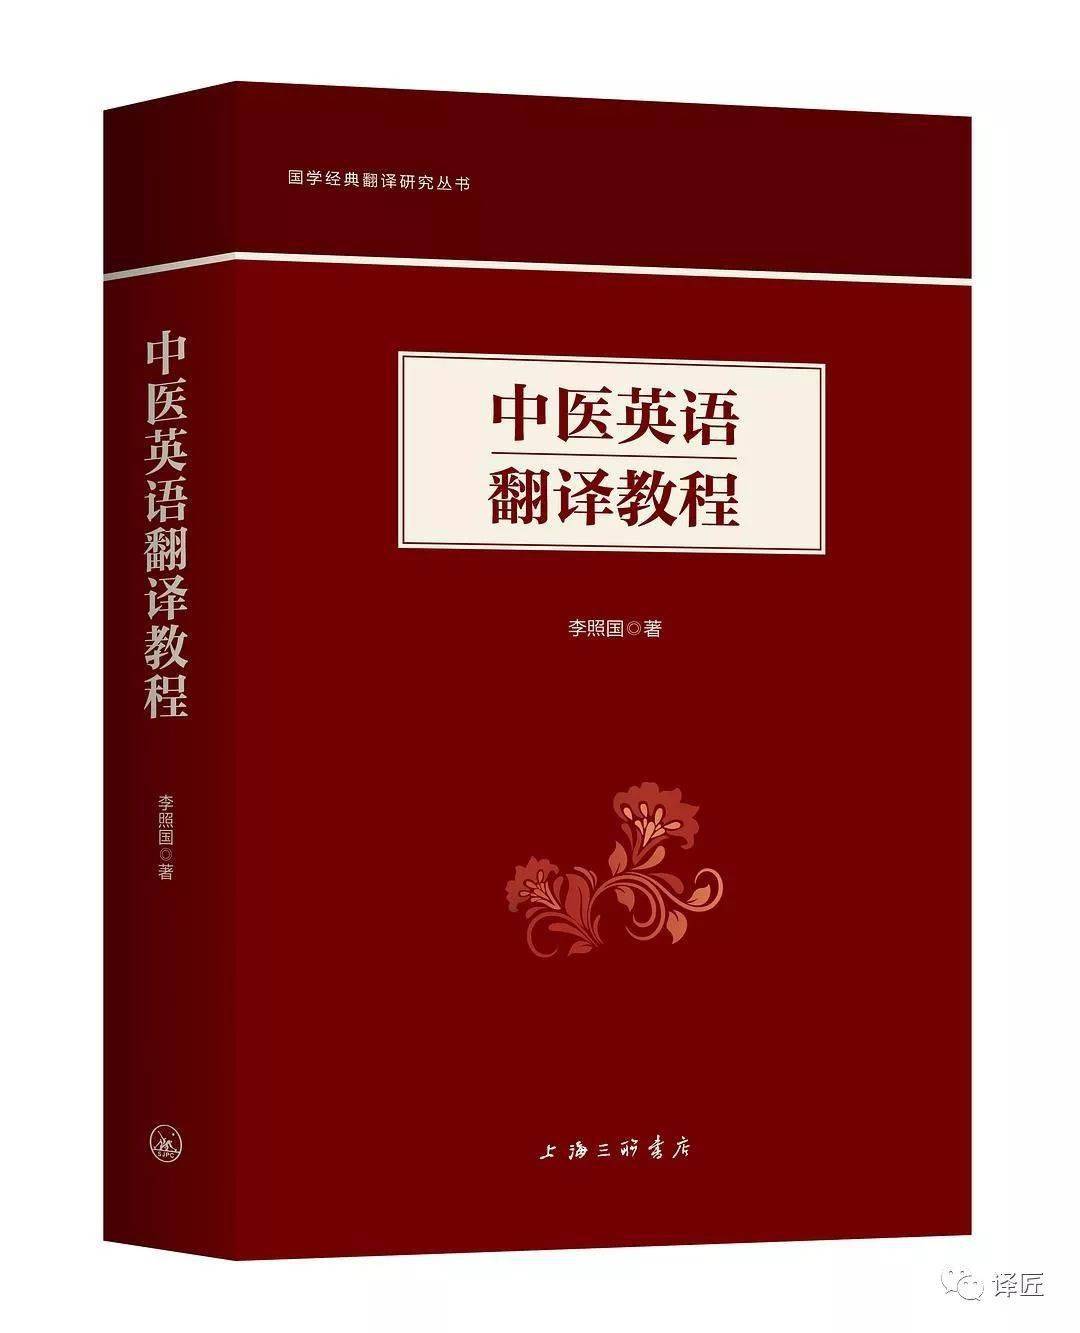 “亚慱体育APP官方”
医学翻译书籍：《中医英语翻译教程》